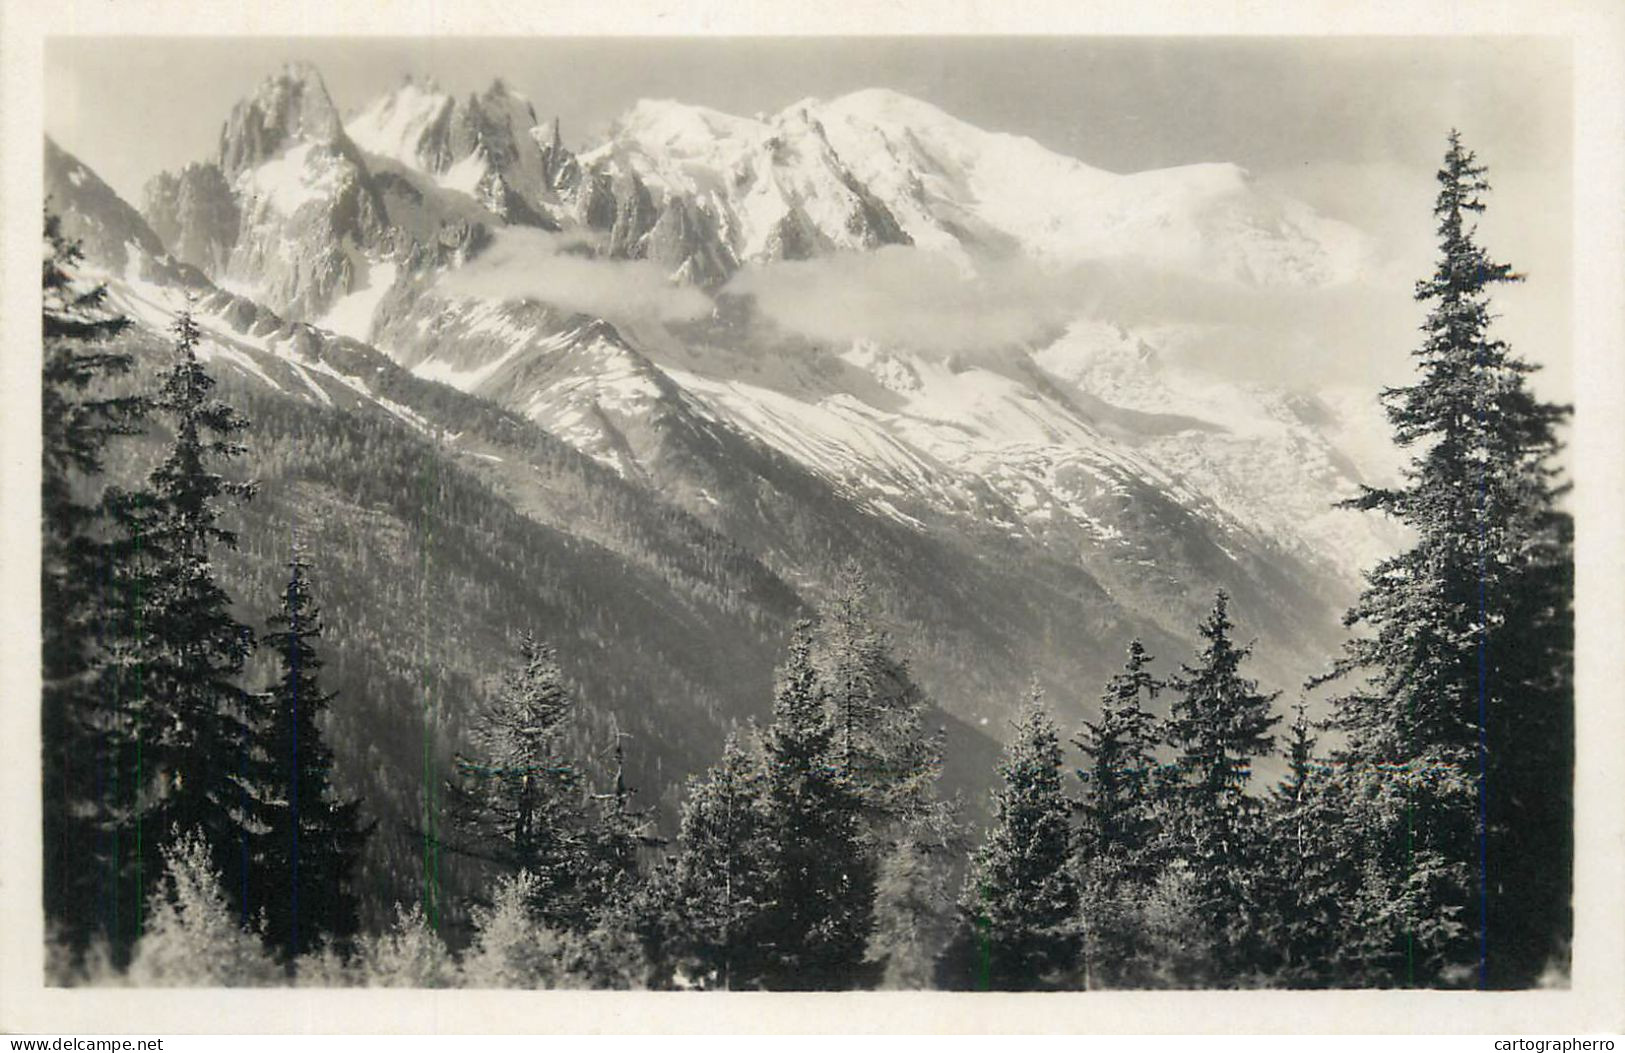 France Chaine du Mont Blanc vue de Coupeau